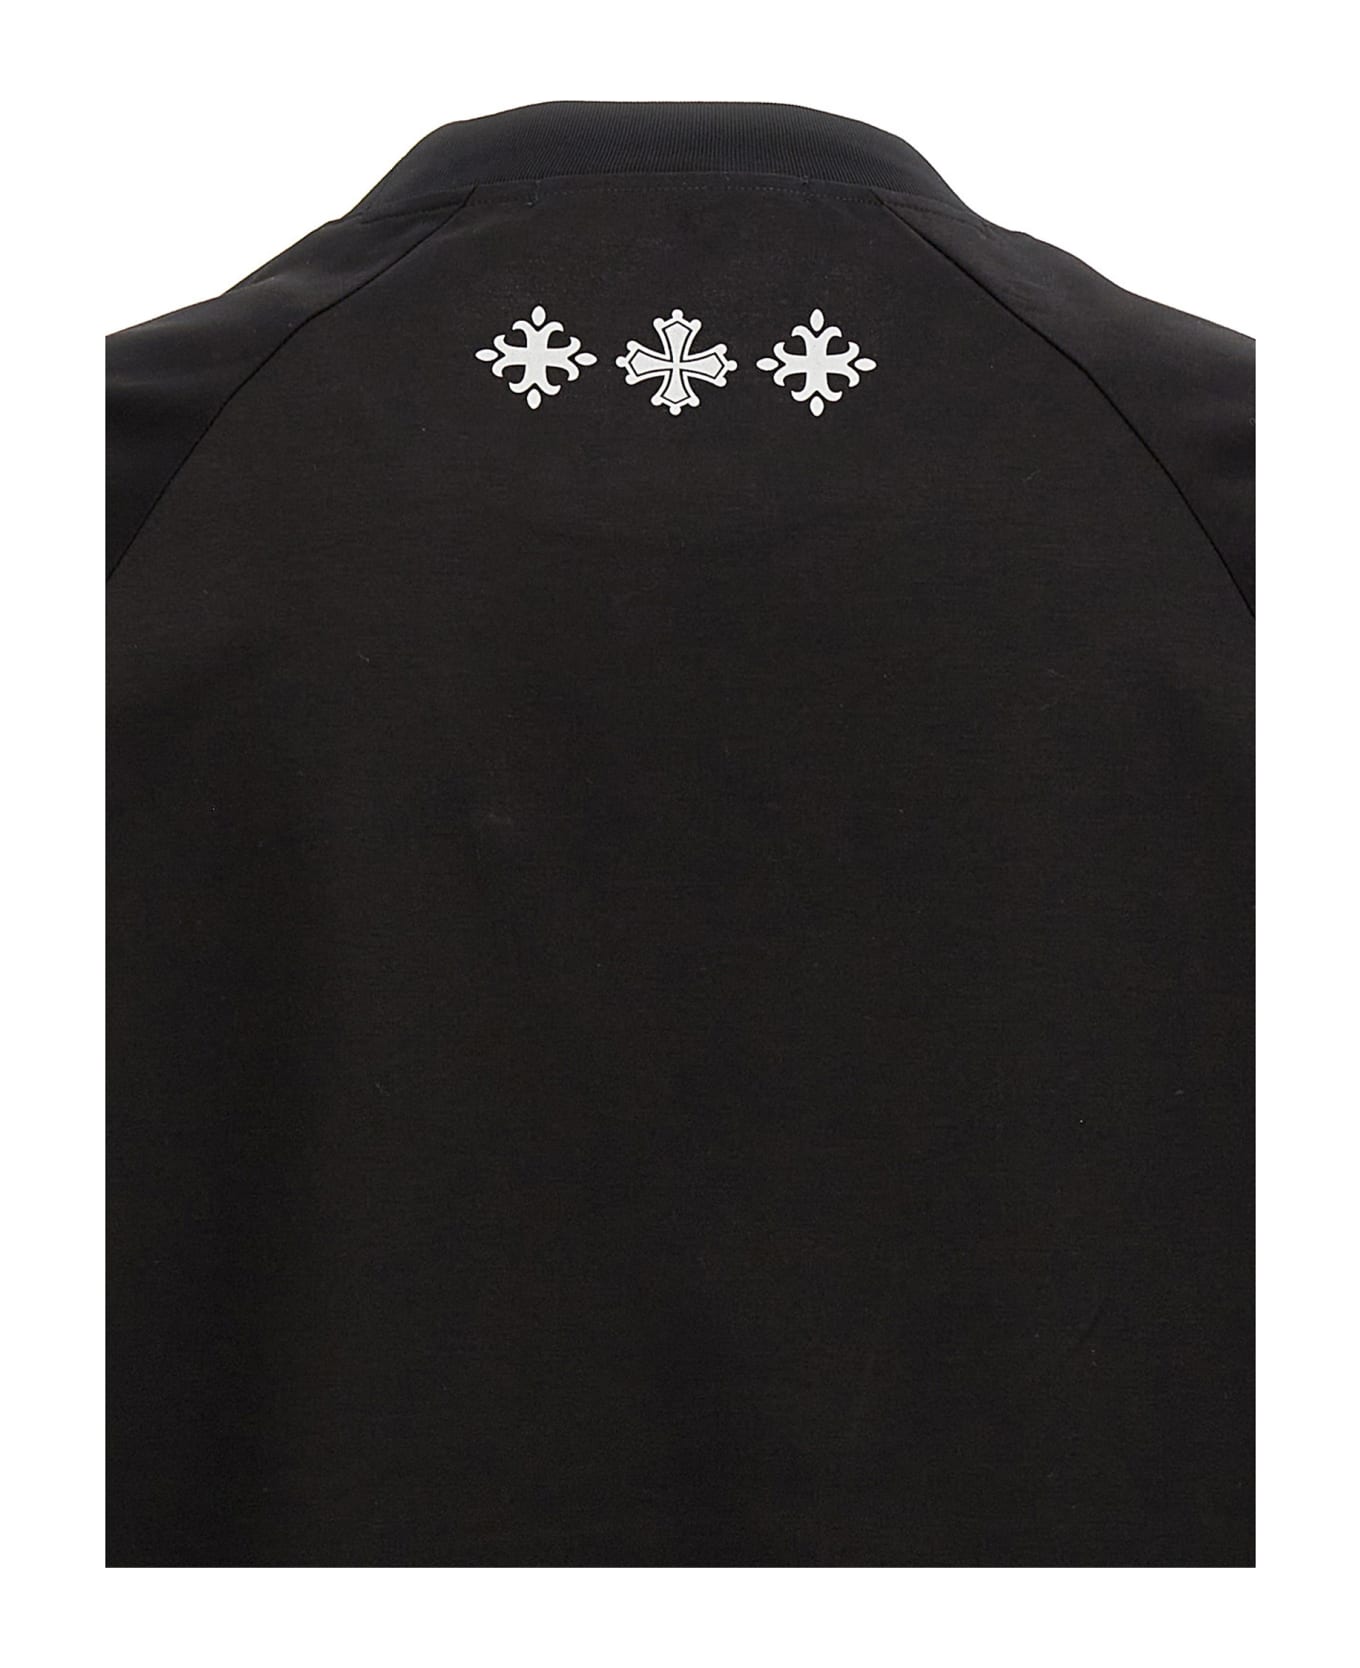 TATRAS 'jani' T-shirt - Black   シャツ